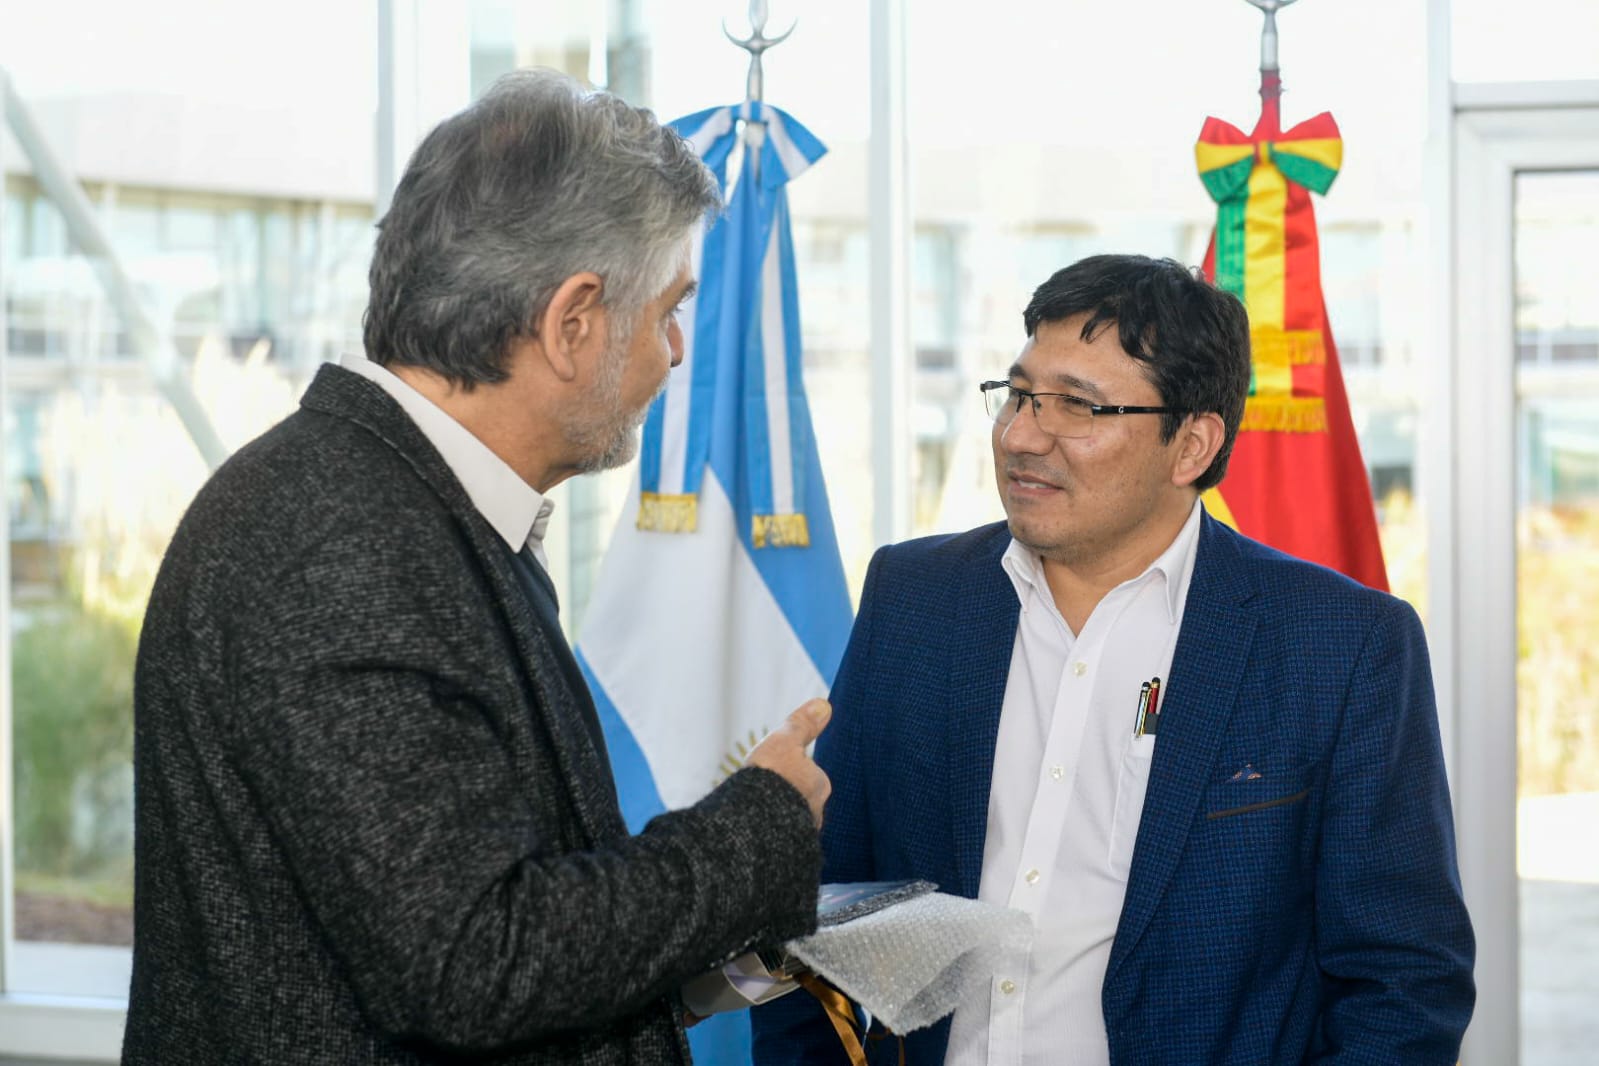 Convenio de cooperación científico-tecnológica con Bolivia para la producción de celdas y baterías de ion litio | Argentina.gob.ar